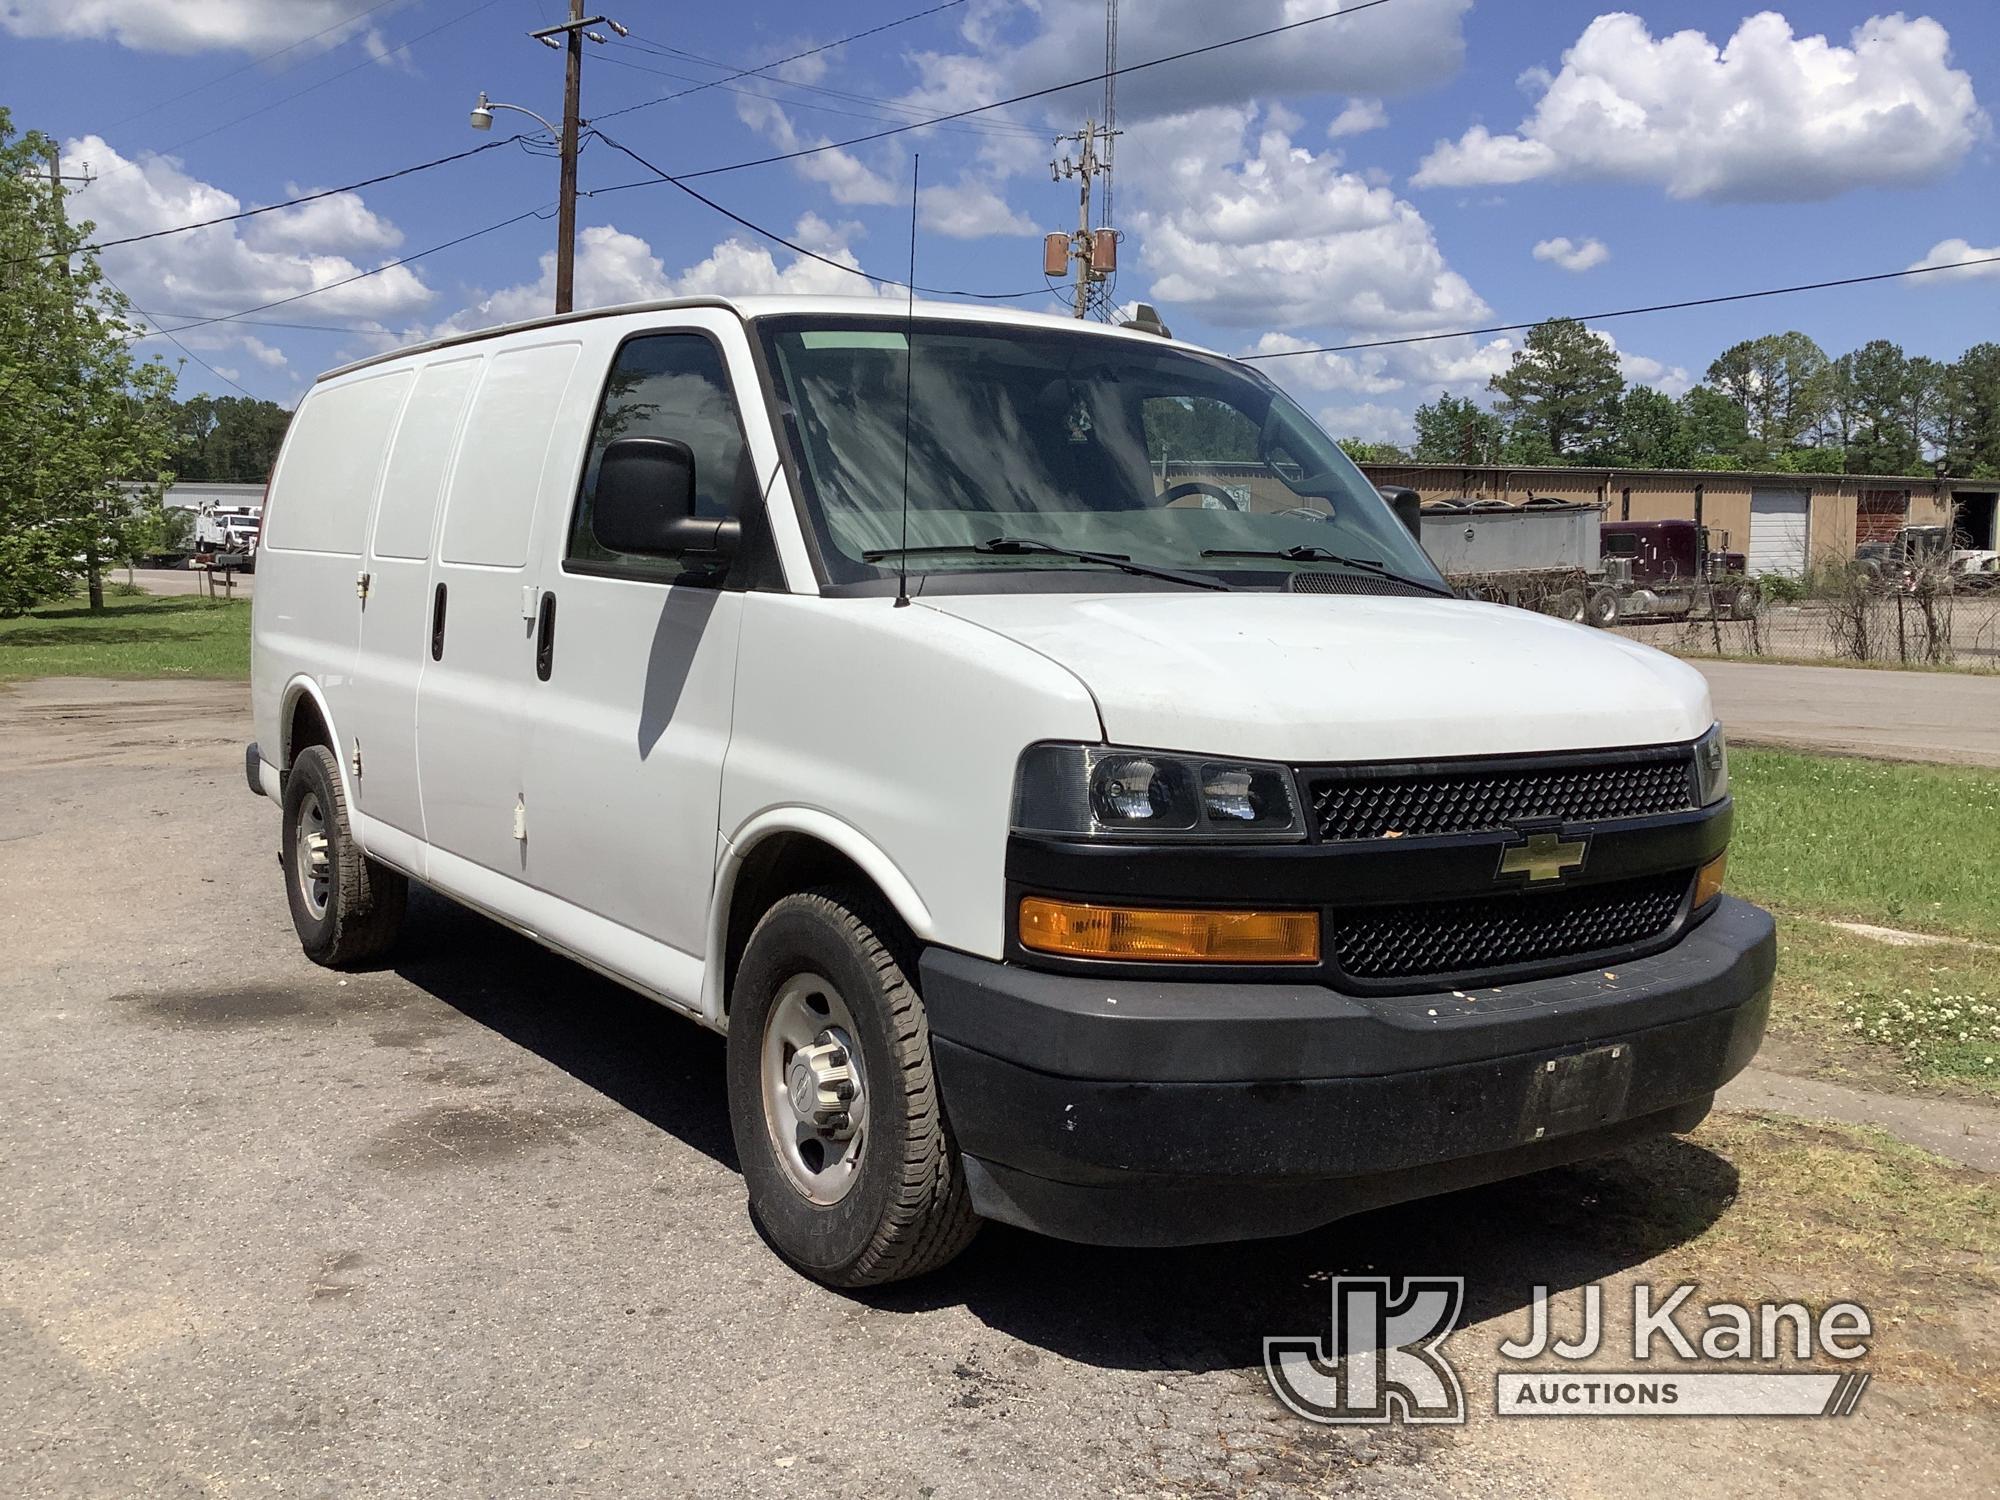 (Graysville, AL) 2018 Chevrolet Express G2500 Cargo Van Runs & Moves) (Check Engine Light On, Minor